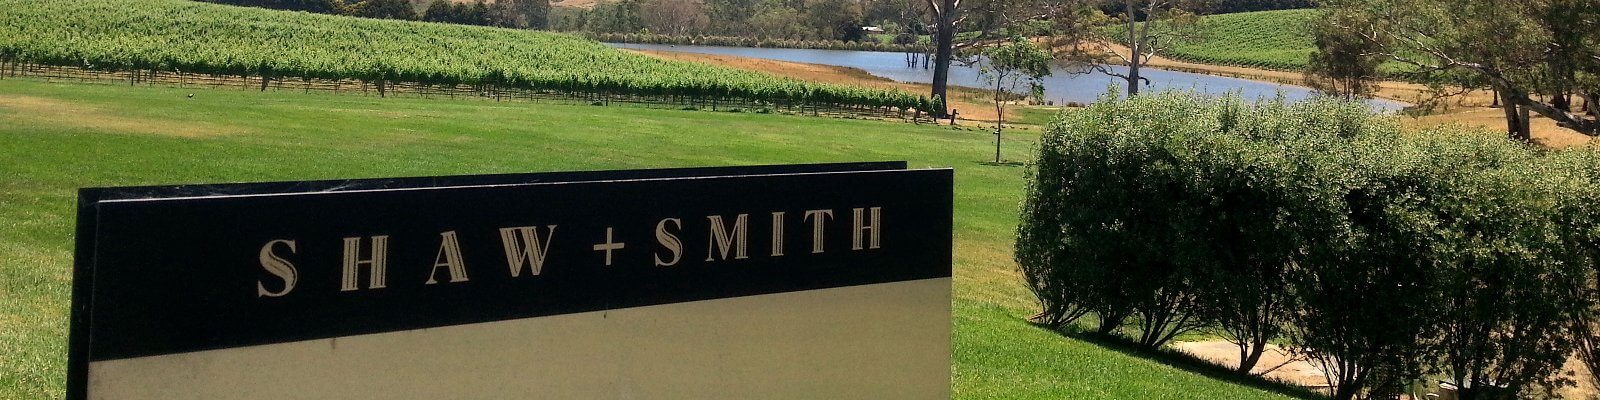 Vores samling af Smith + Shaw - Find den hos Onshore Cellars, din leverandør af yacht-vin